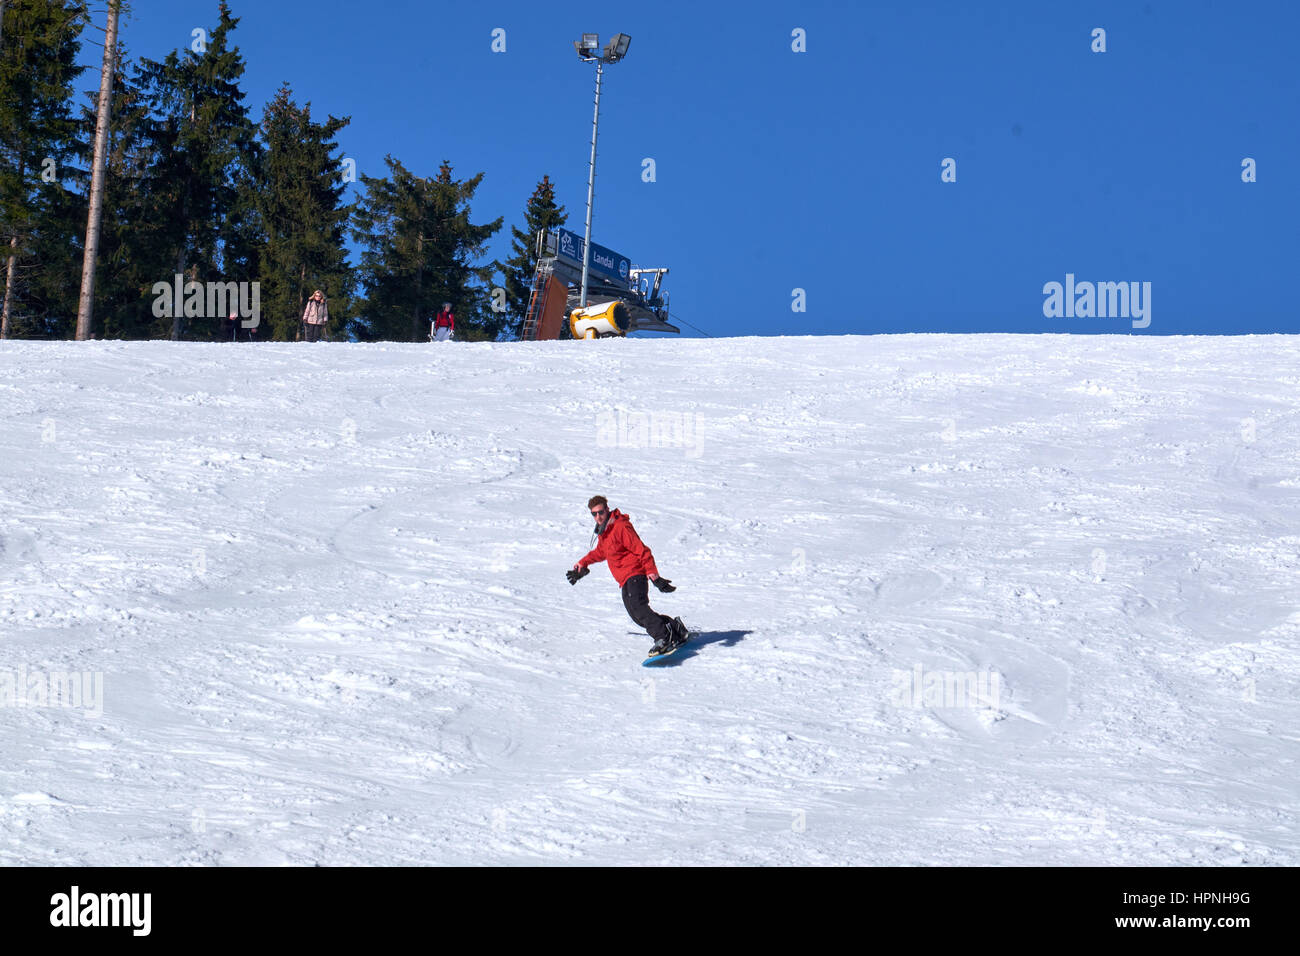 WINTERBERG, Germania - 15 febbraio 2017: uomo su snowboard sulla sua strada giù per una pista a carosello sciistico Winterberg Foto Stock